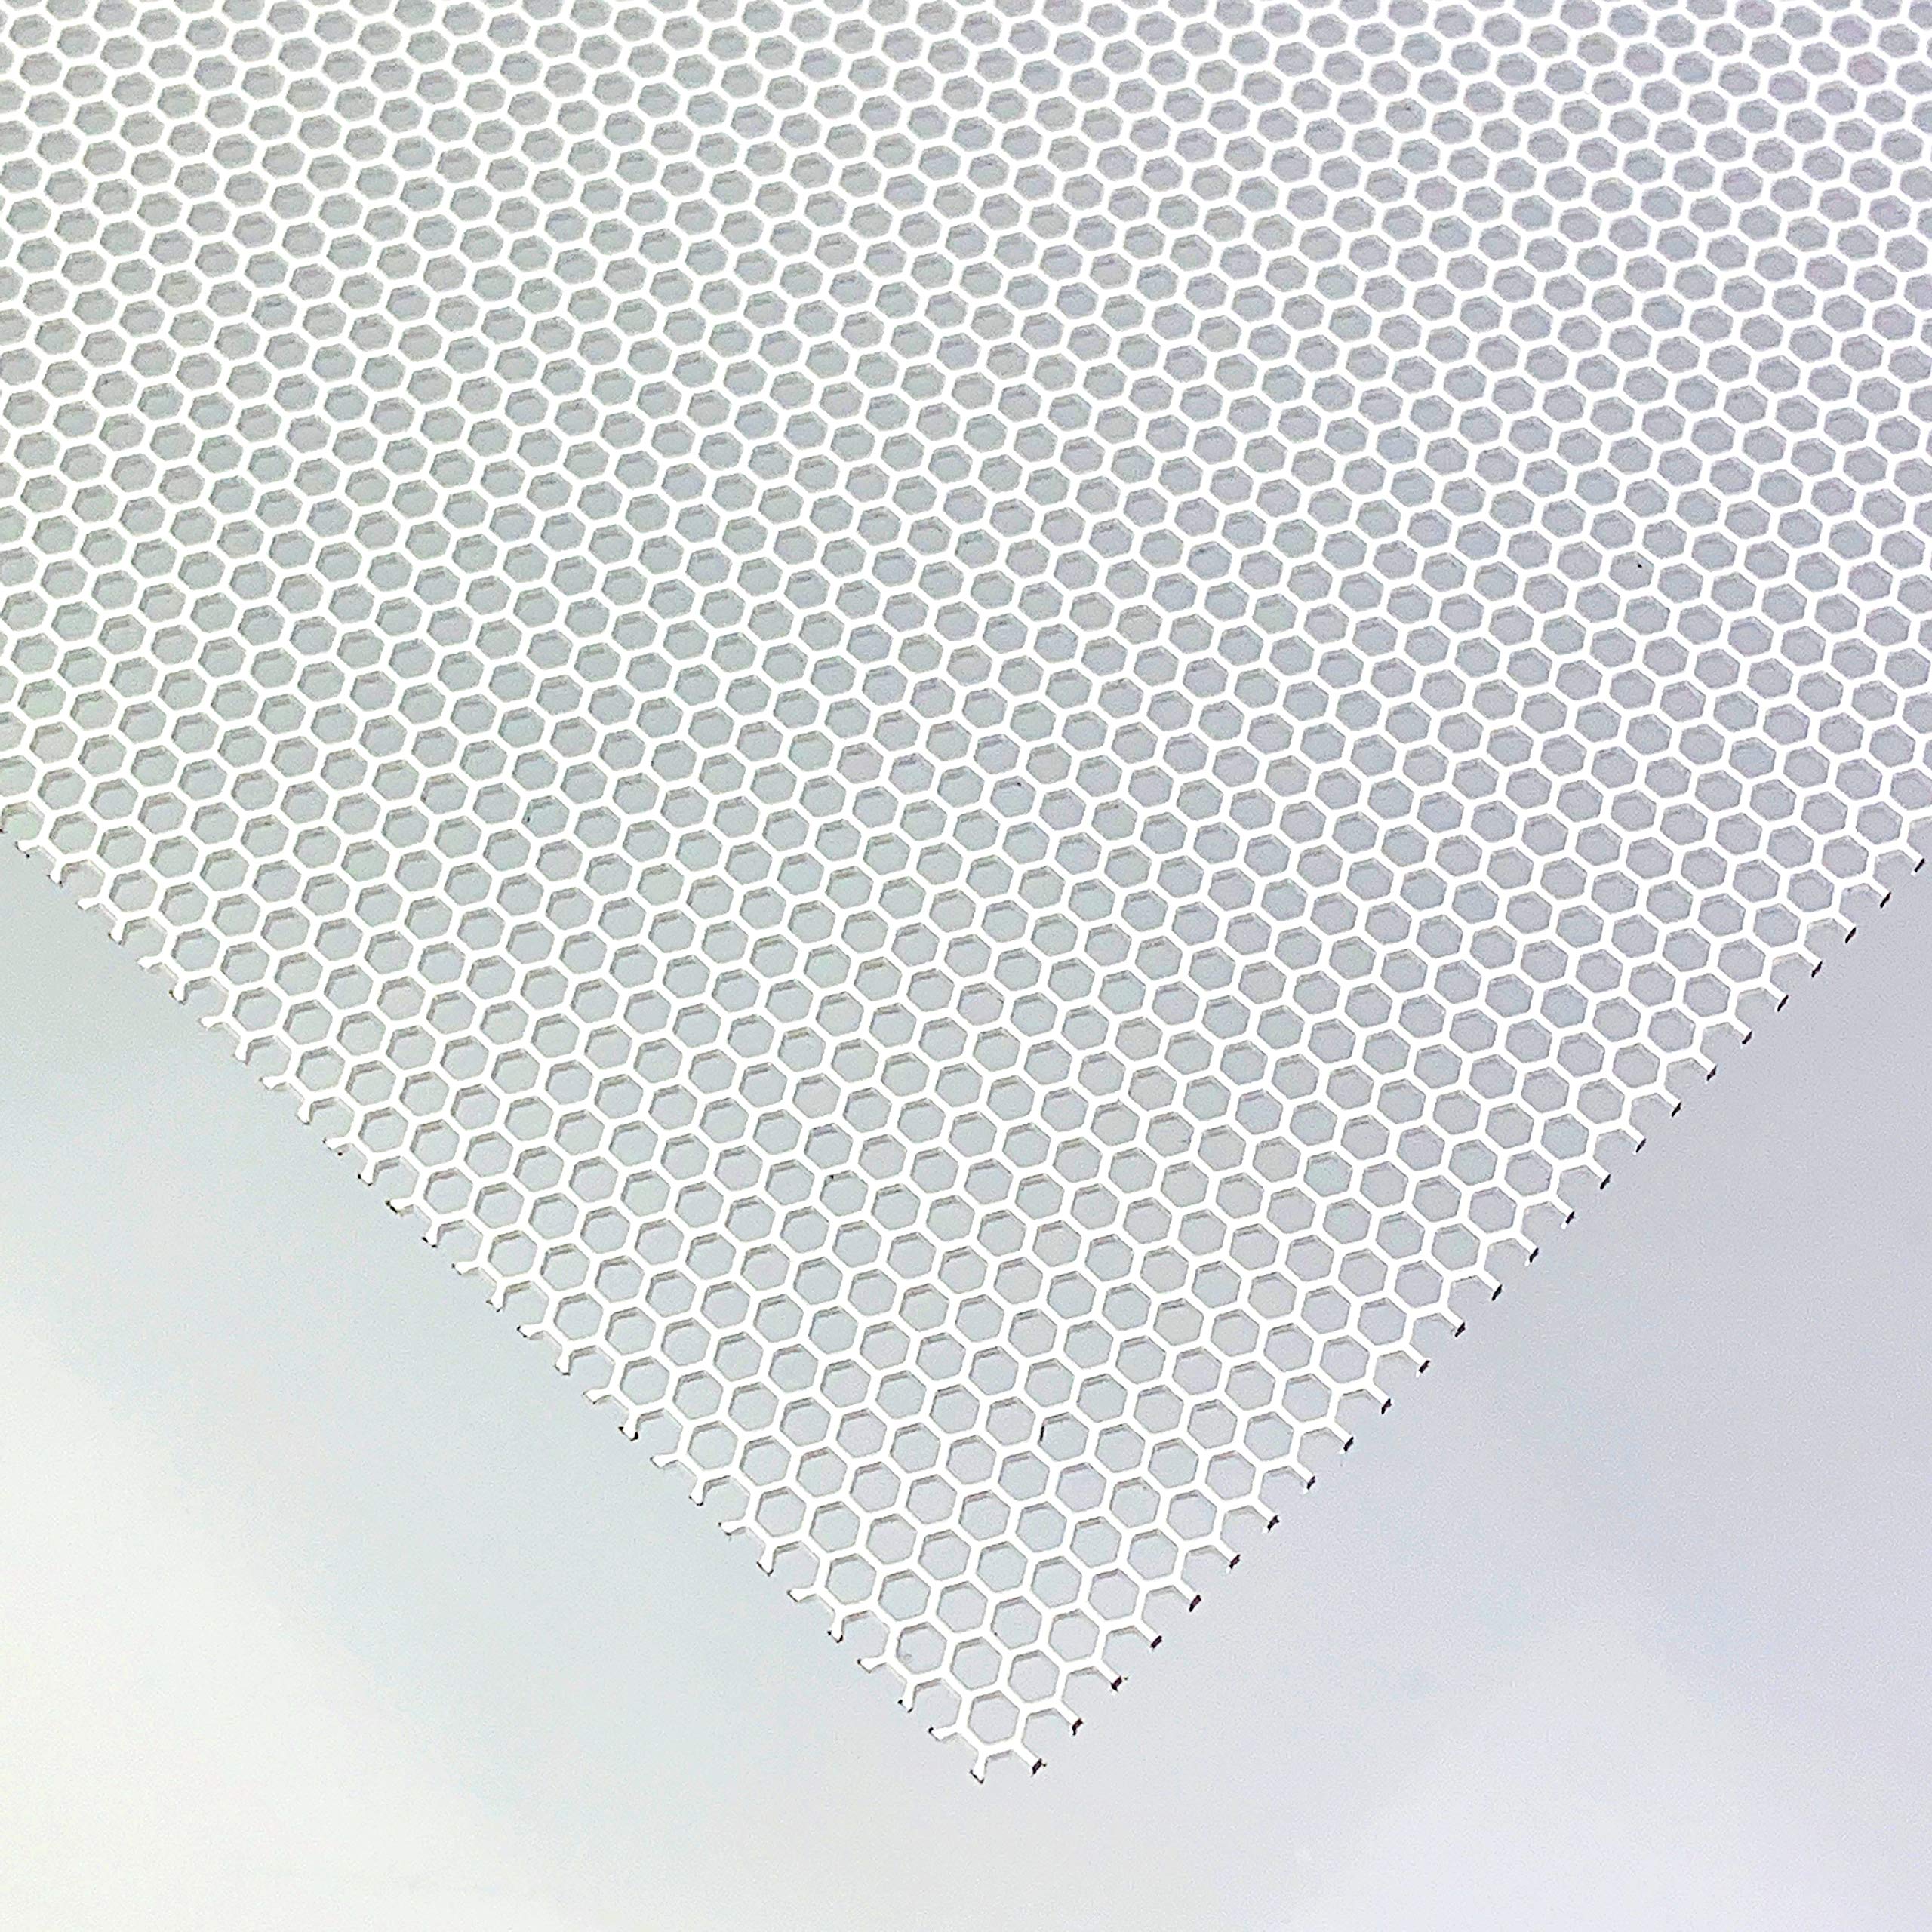 Stahl Lochblech HV2-2,5 Farbig Weiß RAL 9016 Stahl 1 mm dick Hexagonal Gitter Zuschnitt nach Maß (1000 mm x 150 mm)